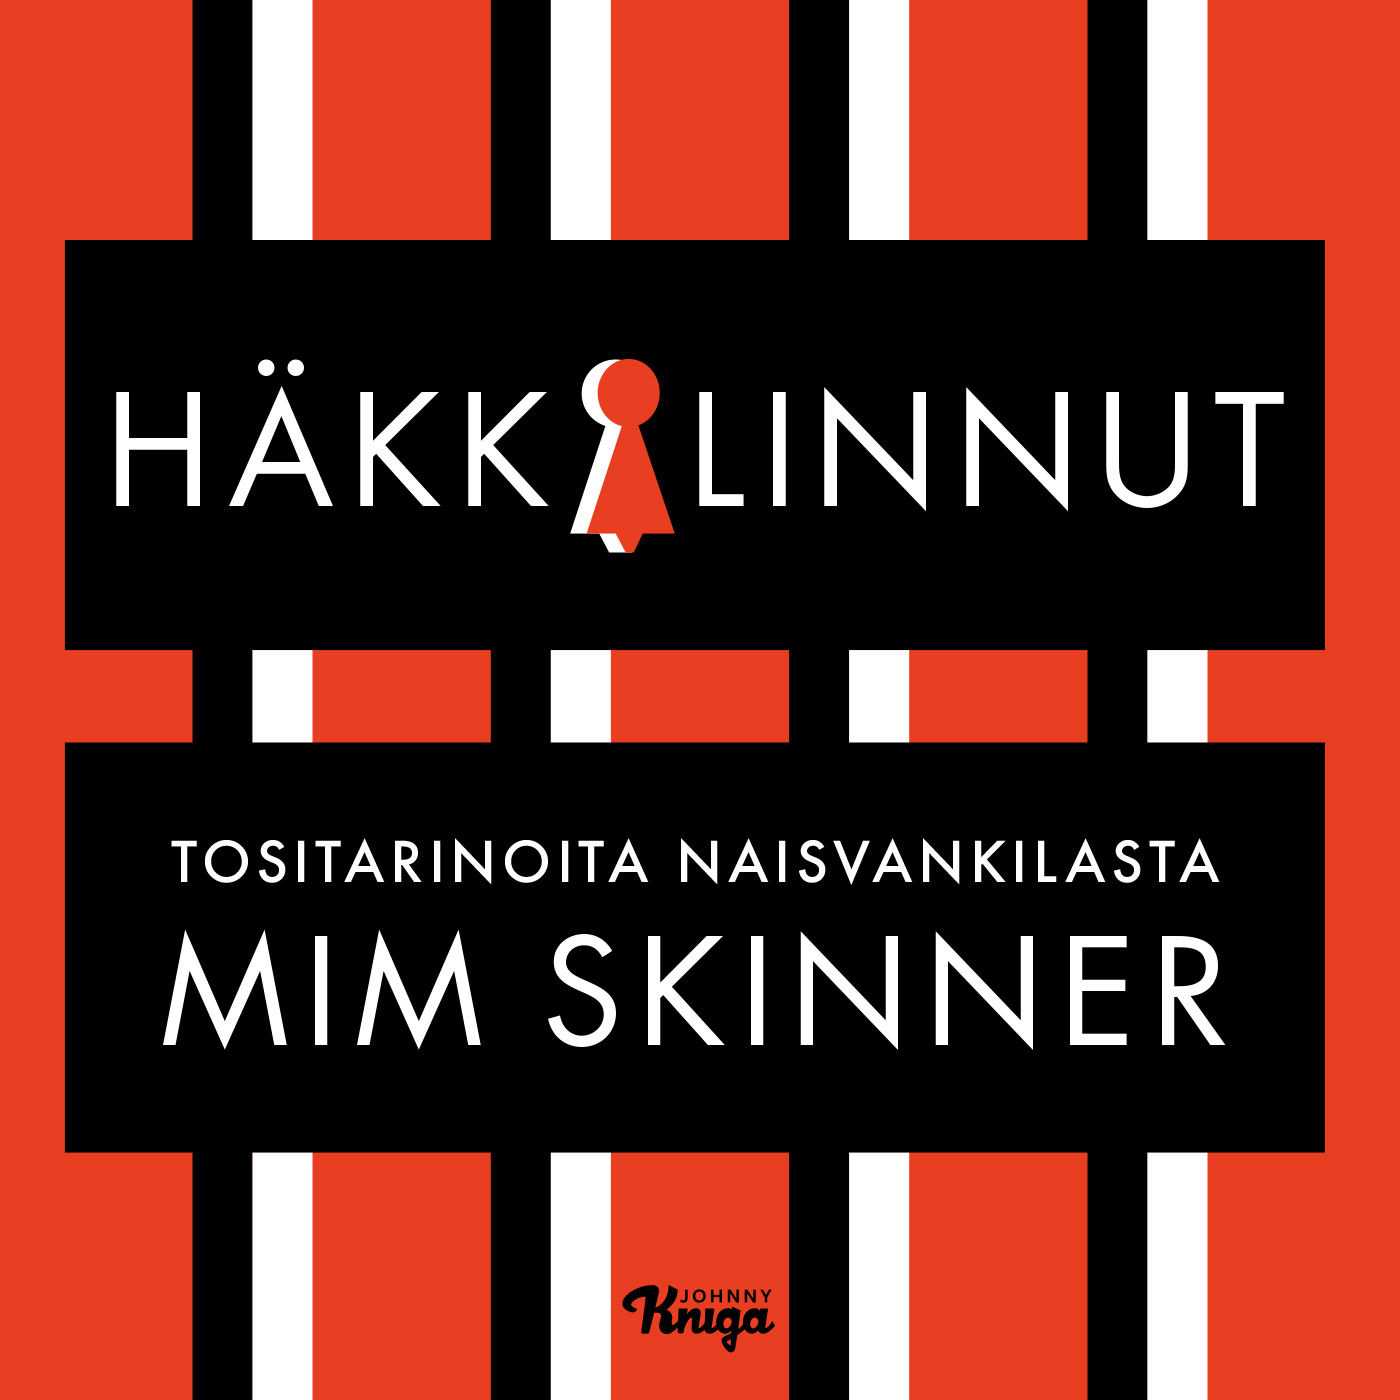 Skinner, Mim - Häkkilinnut: Tositarinoita naisvankilasta, audiobook